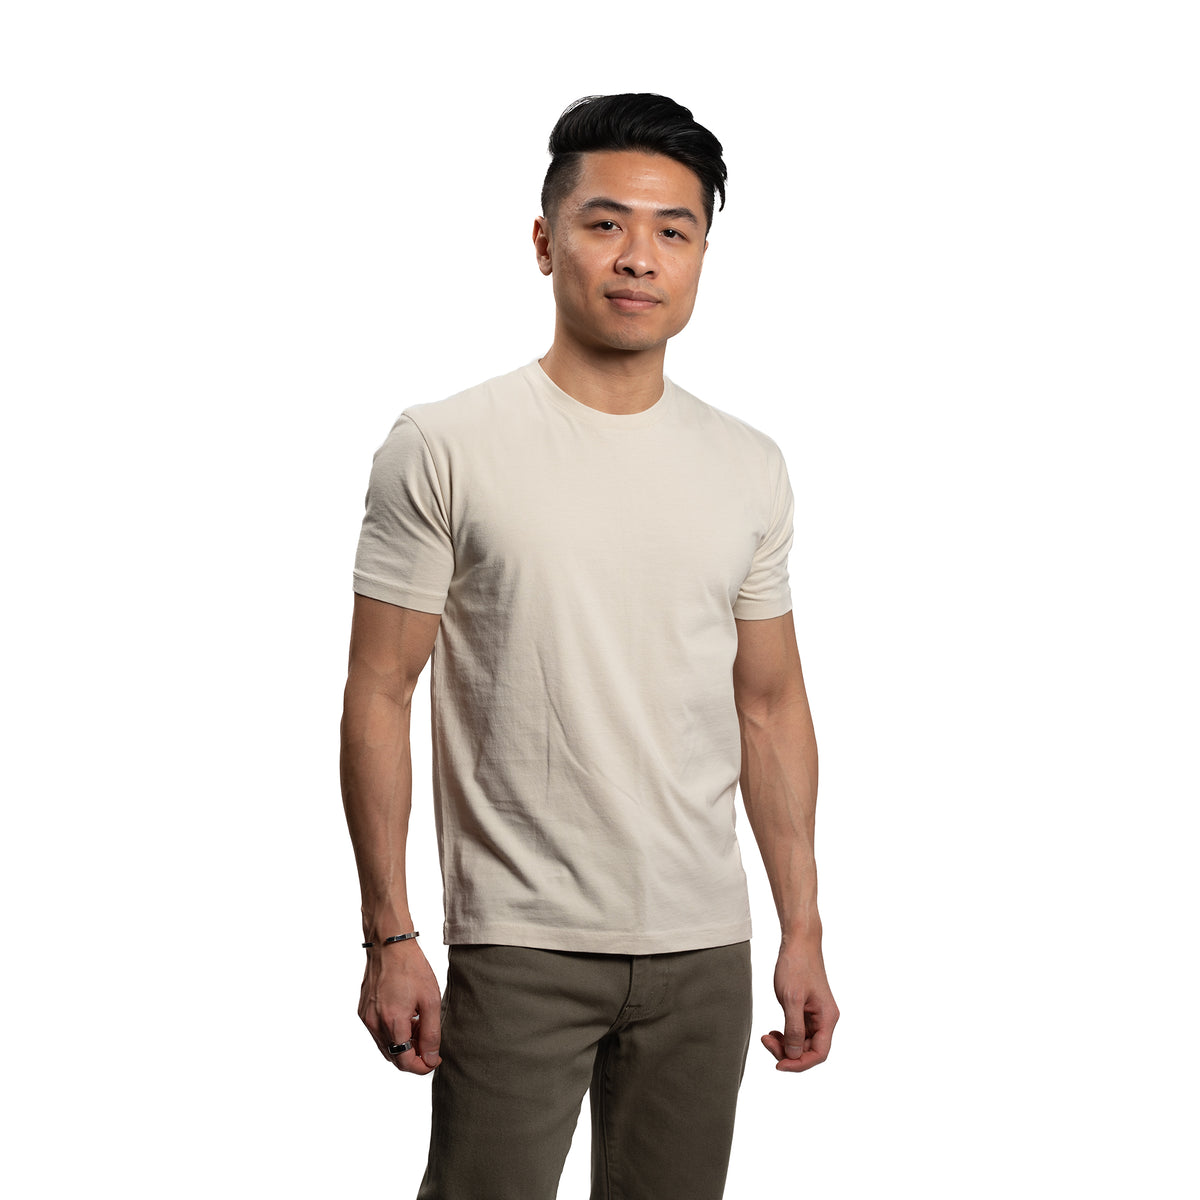 Green Crew Neck T-Shirt for Shorter Men